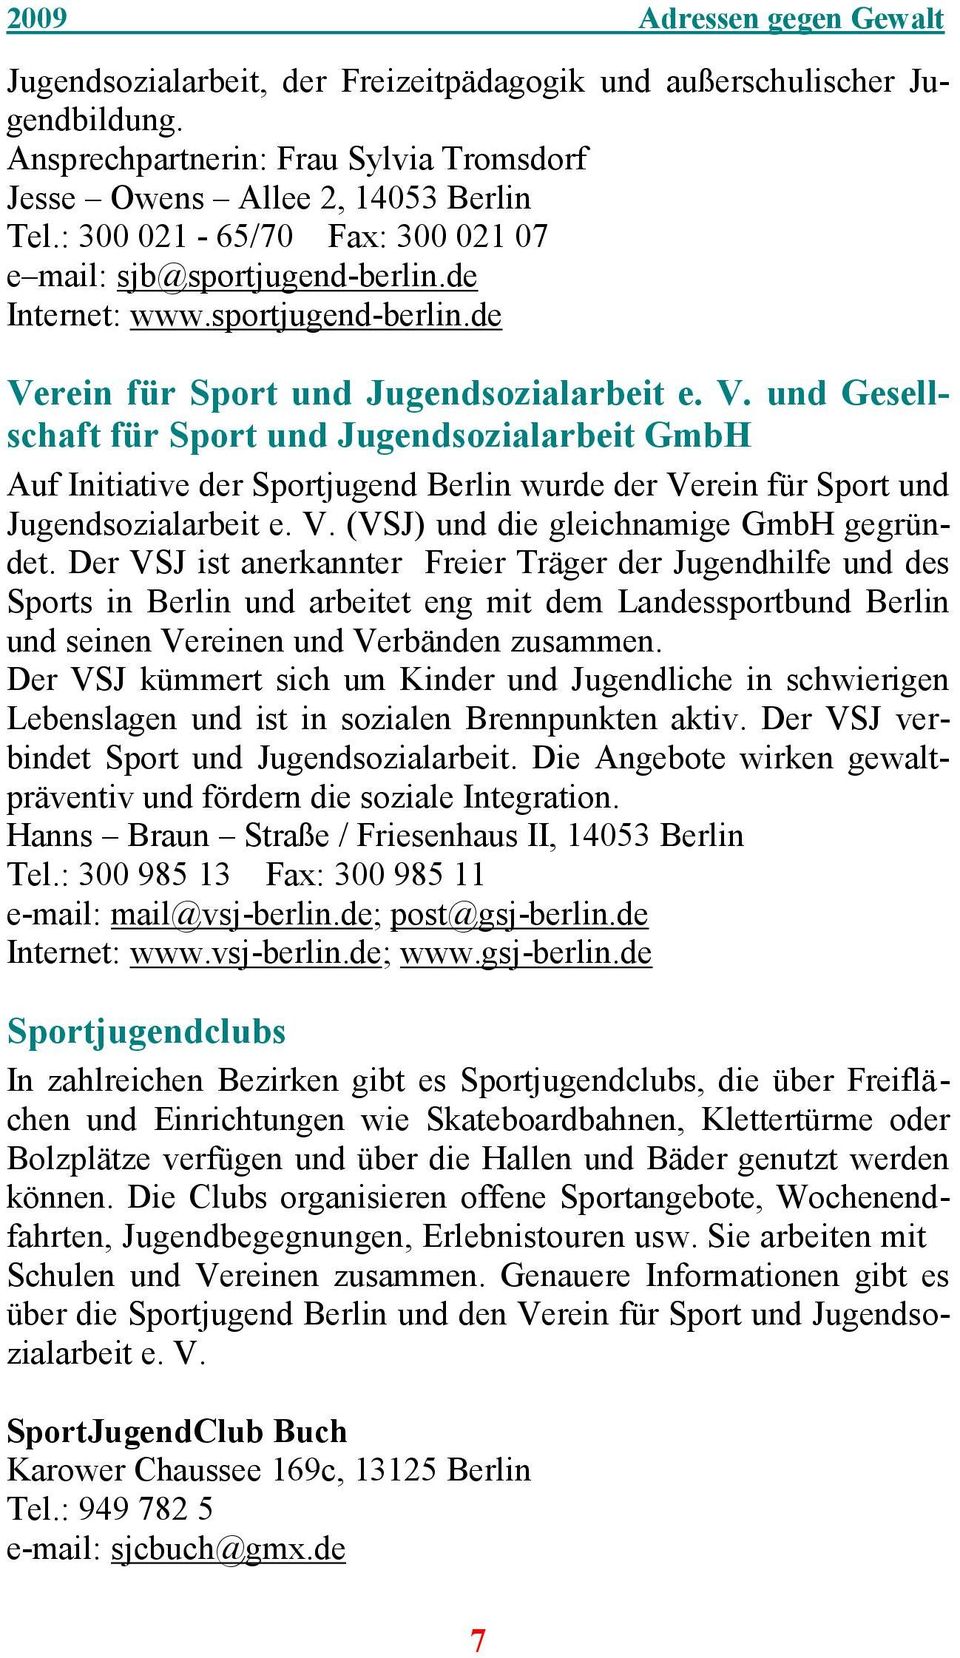 rein für Sport und Jugendsozialarbeit e. V. und Gesellschaft für Sport und Jugendsozialarbeit GmbH Auf Initiative der Sportjugend Berlin wurde der Verein für Sport und Jugendsozialarbeit e. V. (VSJ) und die gleichnamige GmbH gegründet.